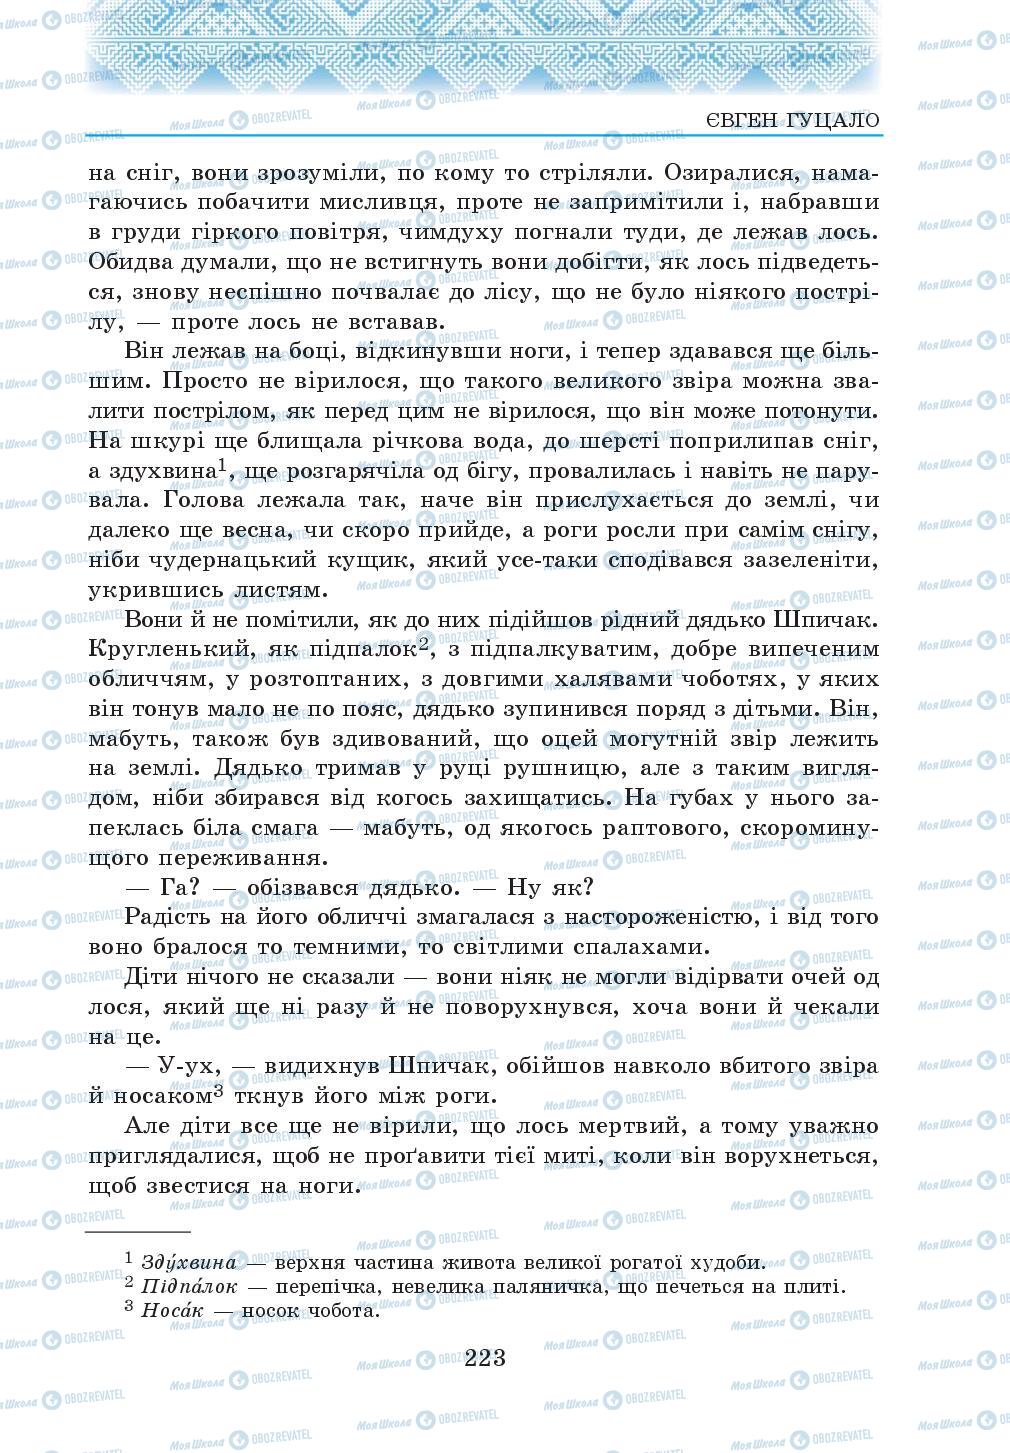 Підручники Українська література 5 клас сторінка 223